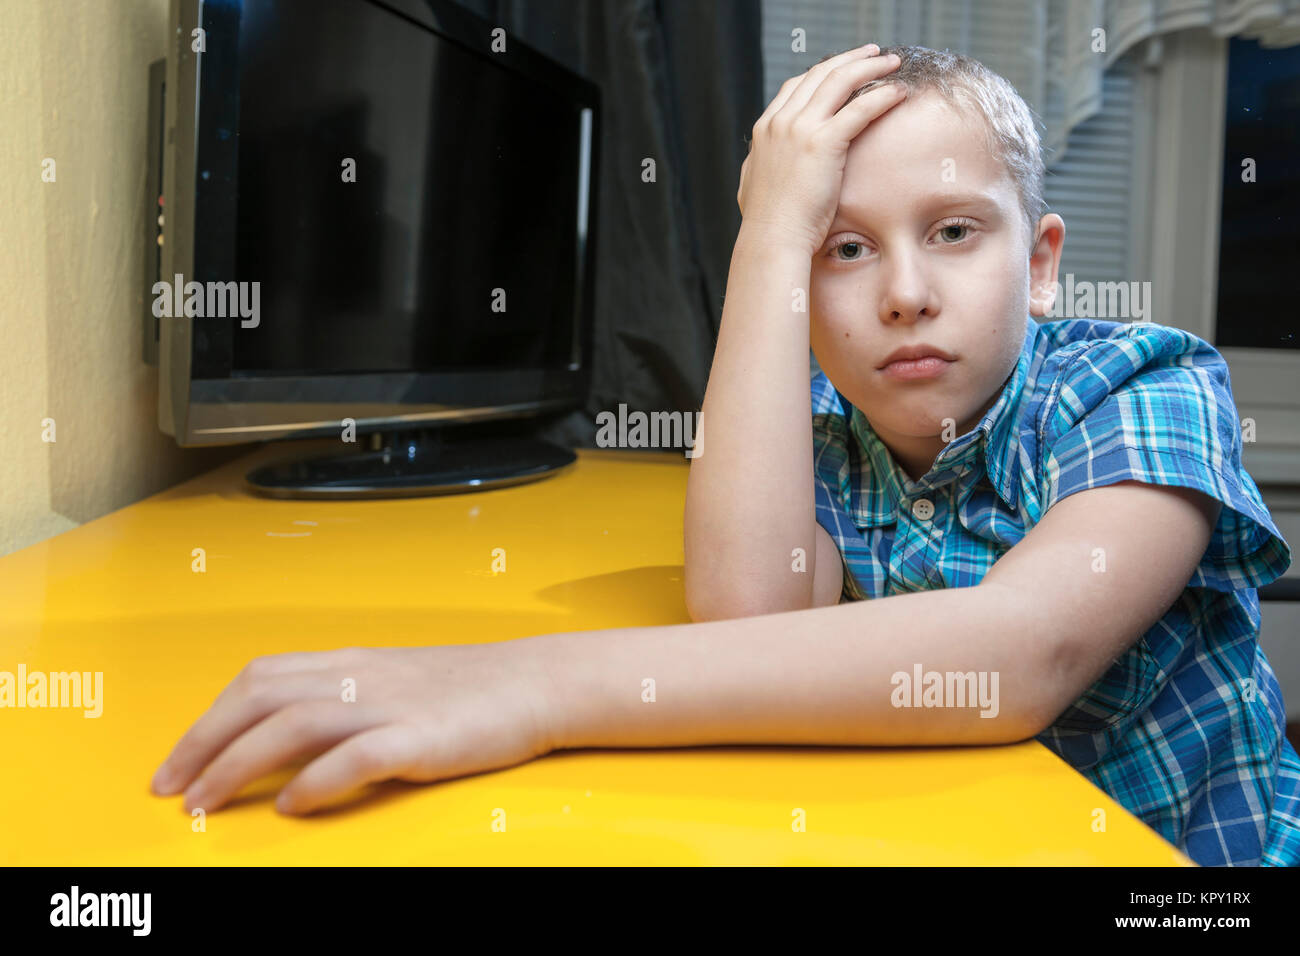 Oberkörper-Ansicht eines zehnjährigen Jungen im blau karierten kurzärmilgen Hemd den linken Arm auf eine gelbe Tischplatte mit einem TV im Hintergrund liegend. Die rechte Hand am Kopf. Ernster Blick in die Kamera. Stock Photo